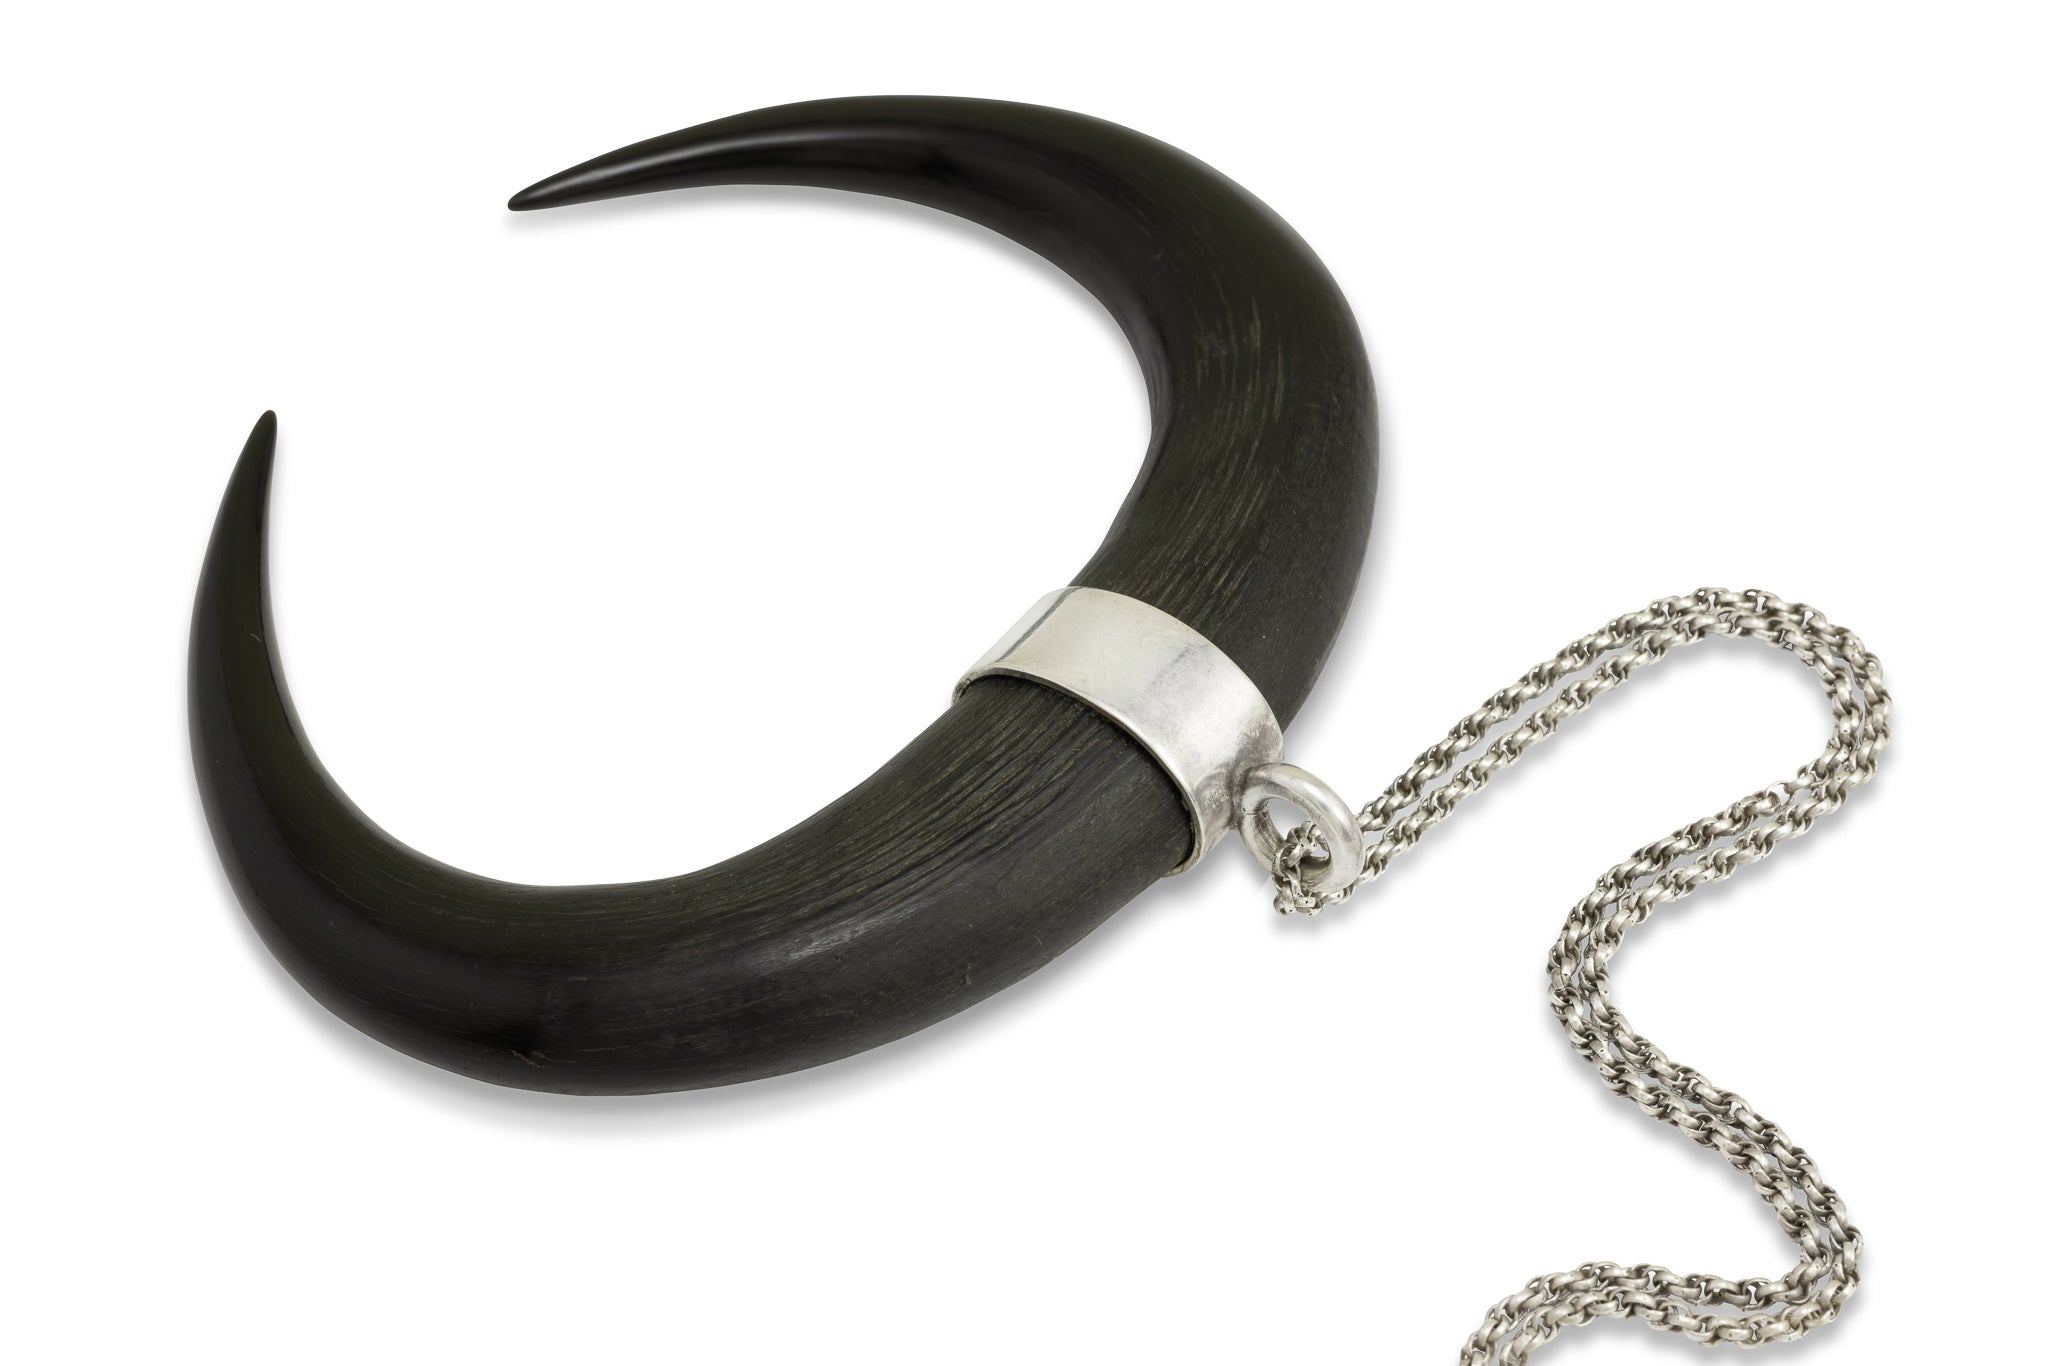 Die zwei polierten Spitzen von Gemshörnern, die durch ein Silberband zusammengehalten werden. Die Hörner formen ein Oval. 